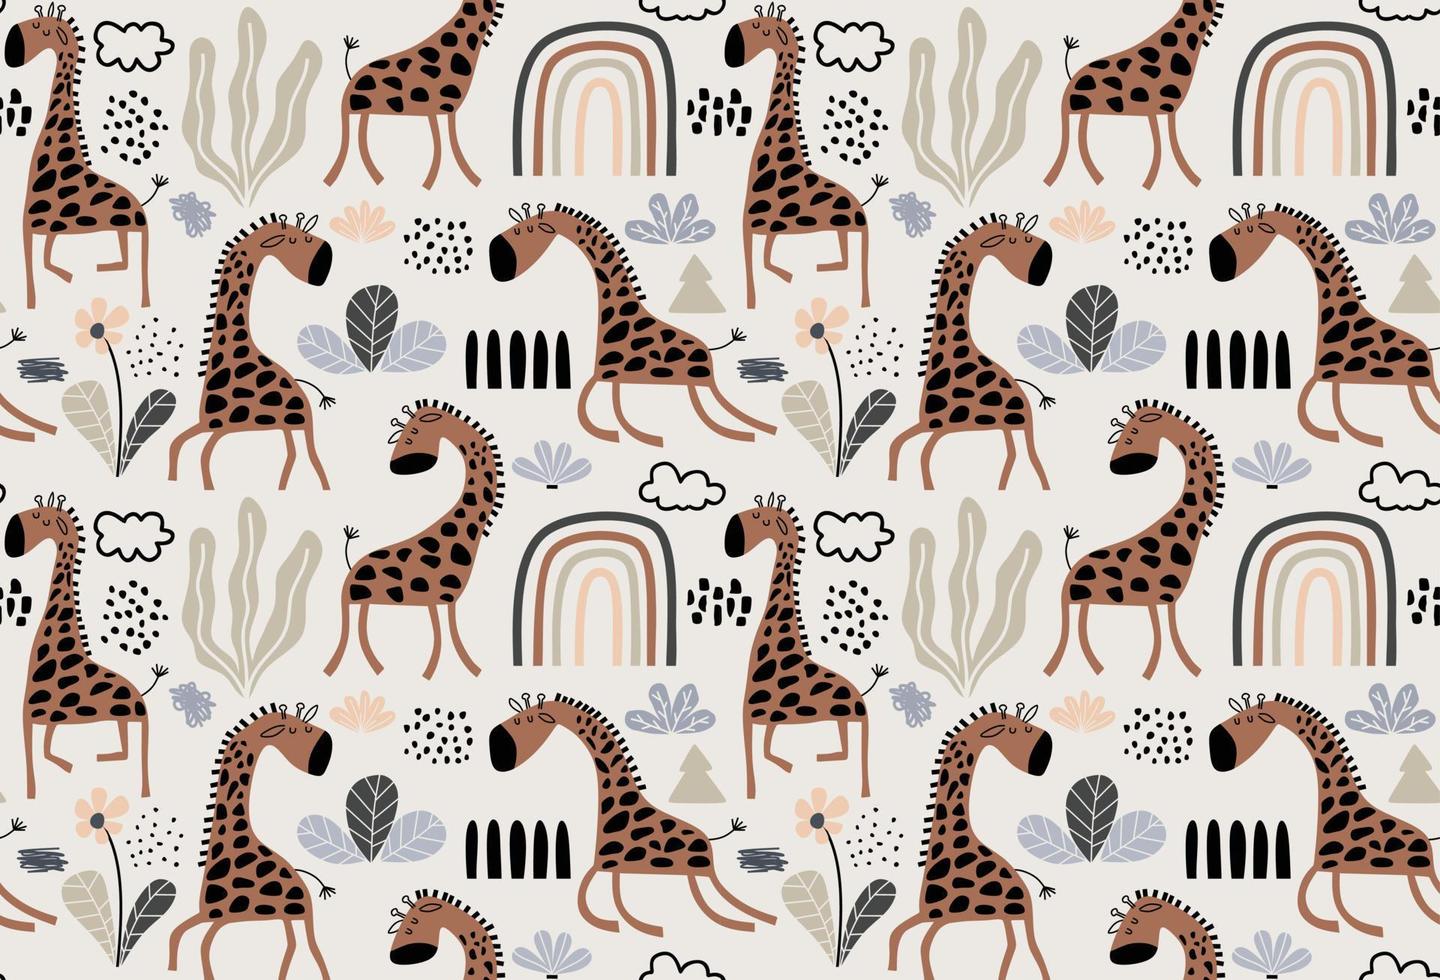 handgezeichnetes farbiges kindisches nahtloses wiederholendes einfaches muster mit niedlichen giraffen vektor